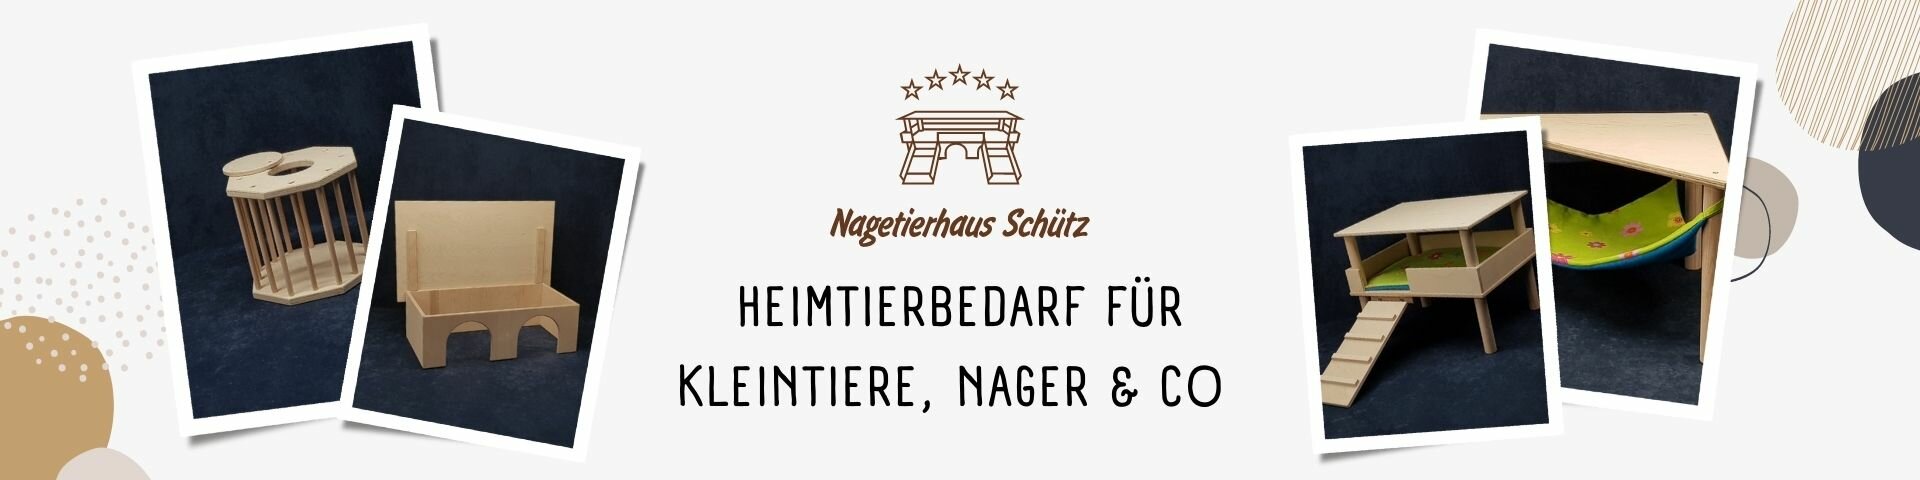 Nagetierhaus Schütz - Heimtierbedarf für Kleintiere, Nagetiere und Co